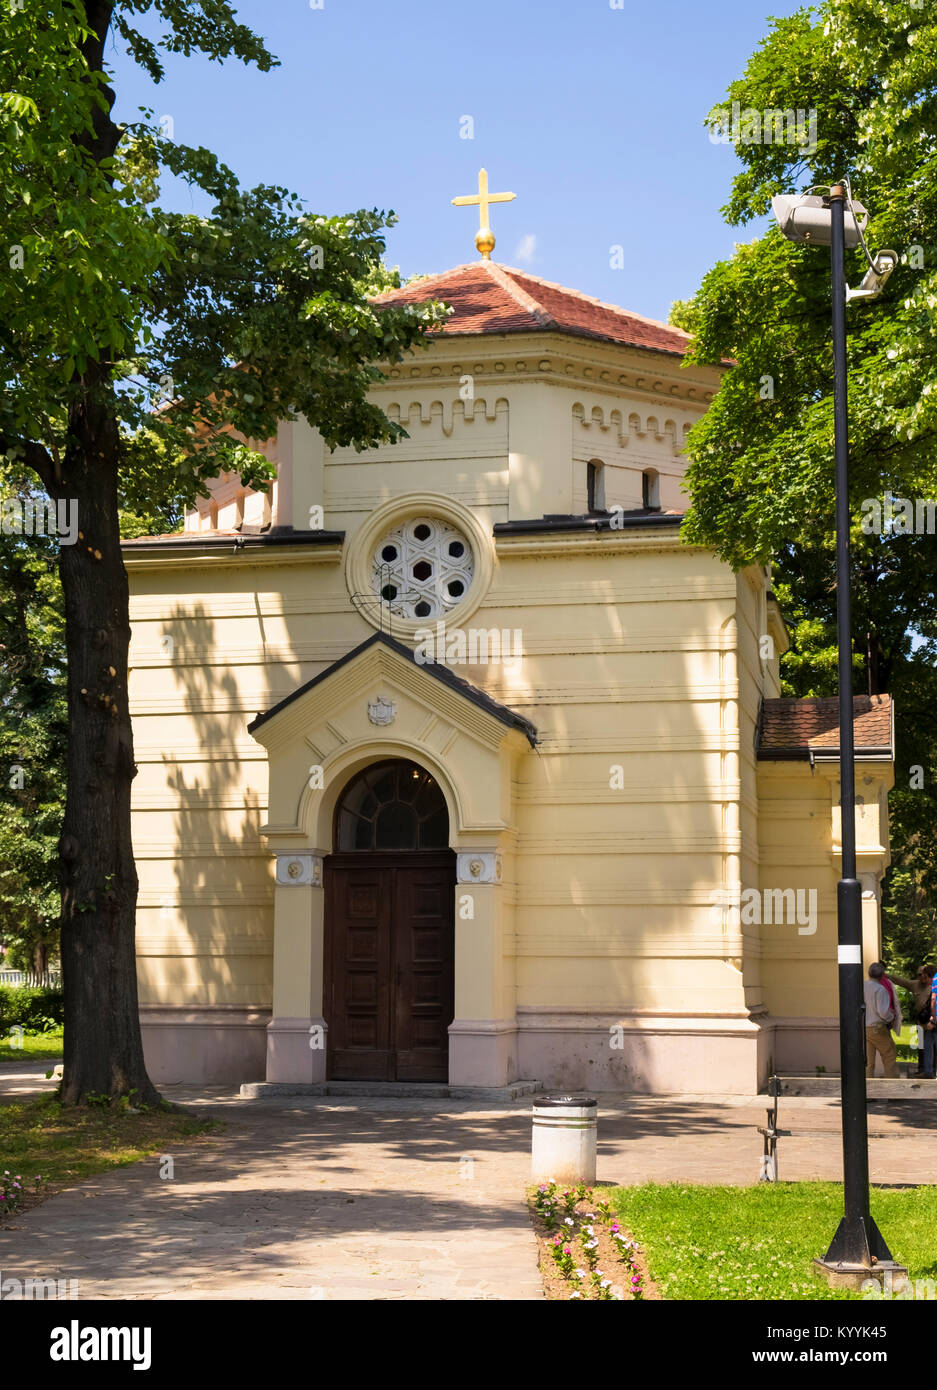 Torre del cranio, Cele kula, a Nis in Serbia - un memoriale per i serbi che sono stati uccisi dai Turchi nella prima insurrezione nazionale nel 1809 Foto Stock